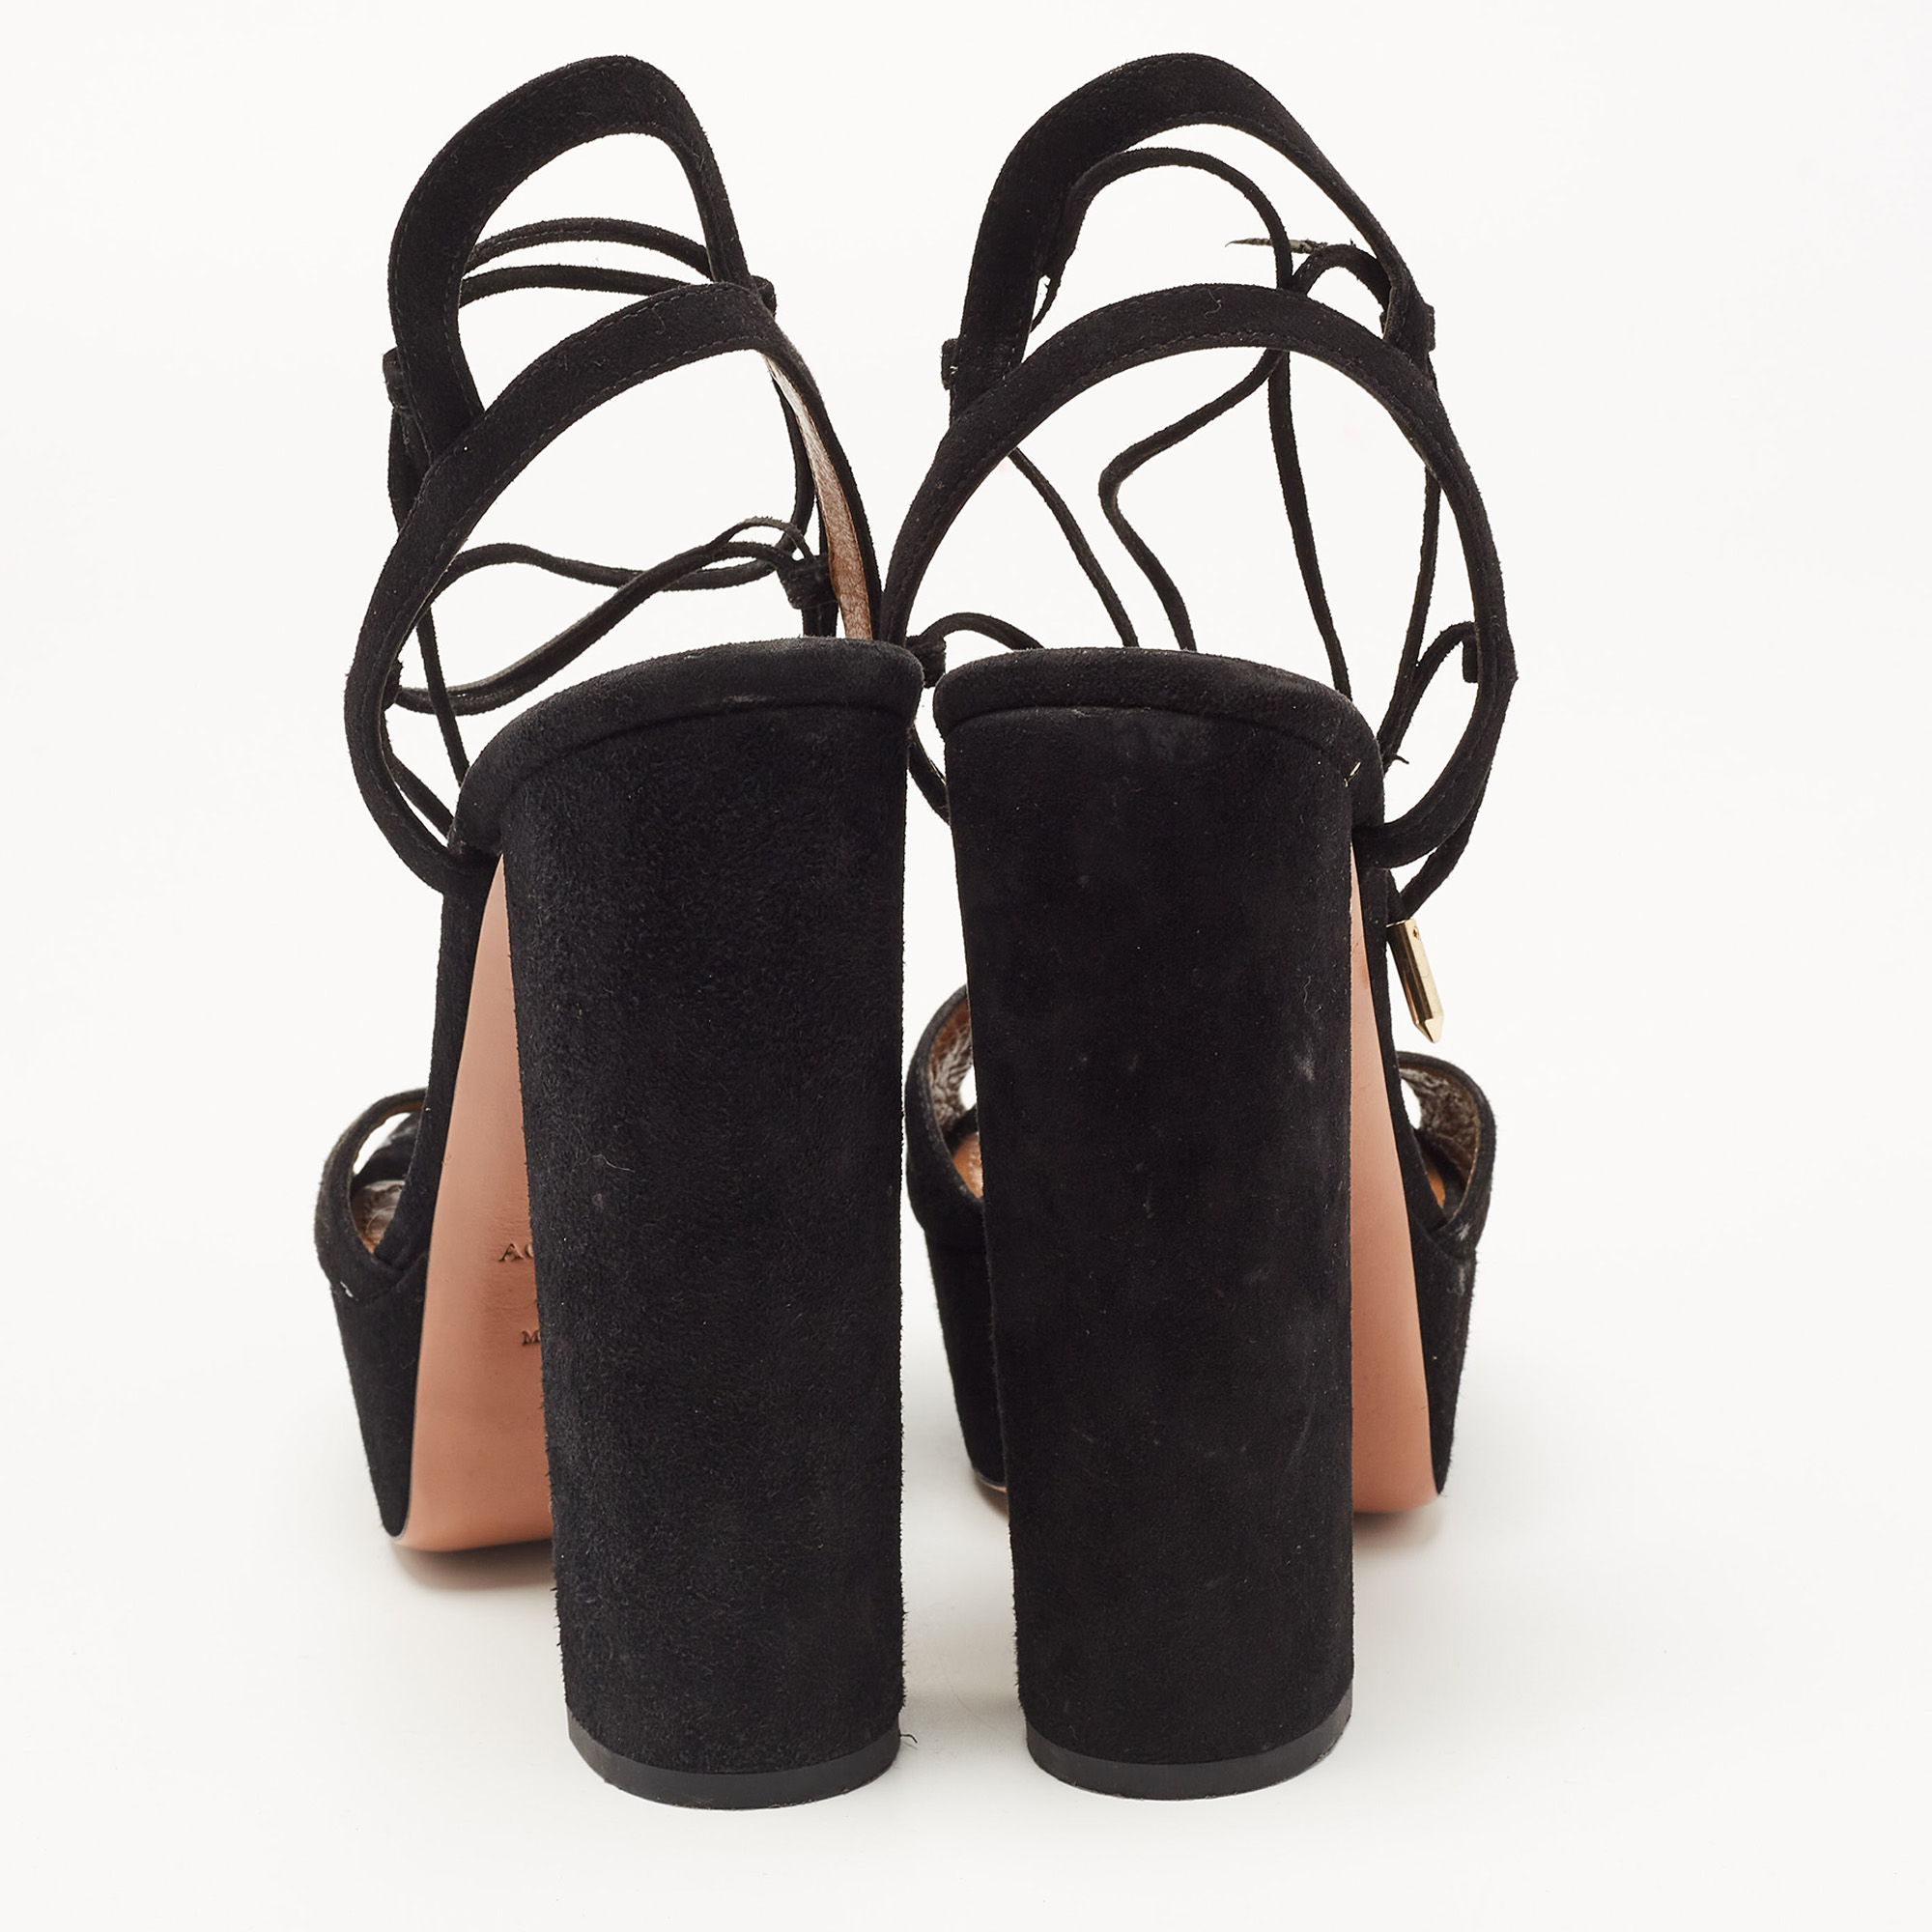 Aquazzura Black Suede Ankle Strap Platform Sandals Size 38